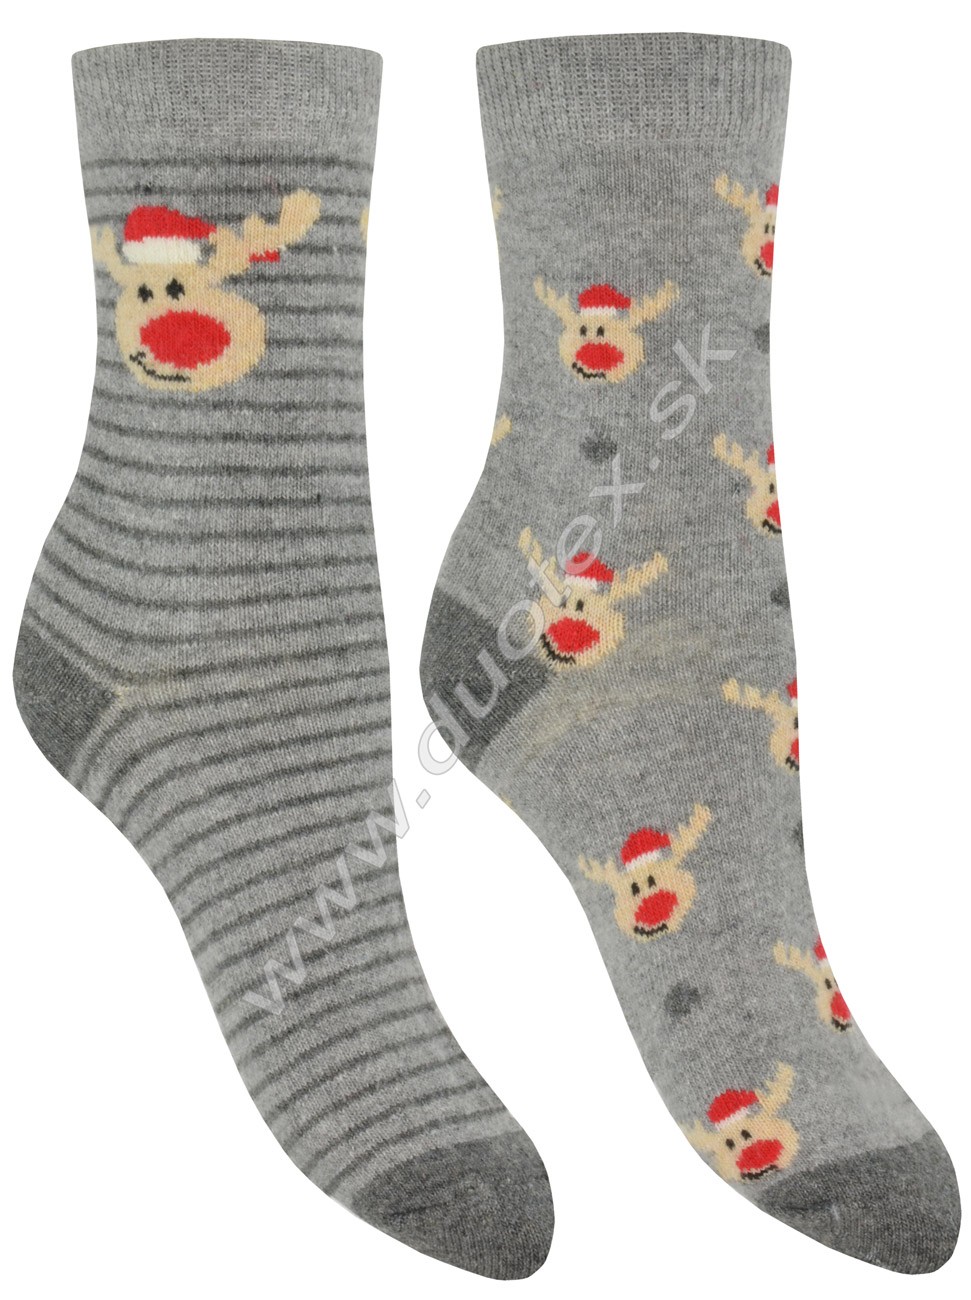 Vianočné ponožky CNB Vianočný sob 37726 sv.sivá